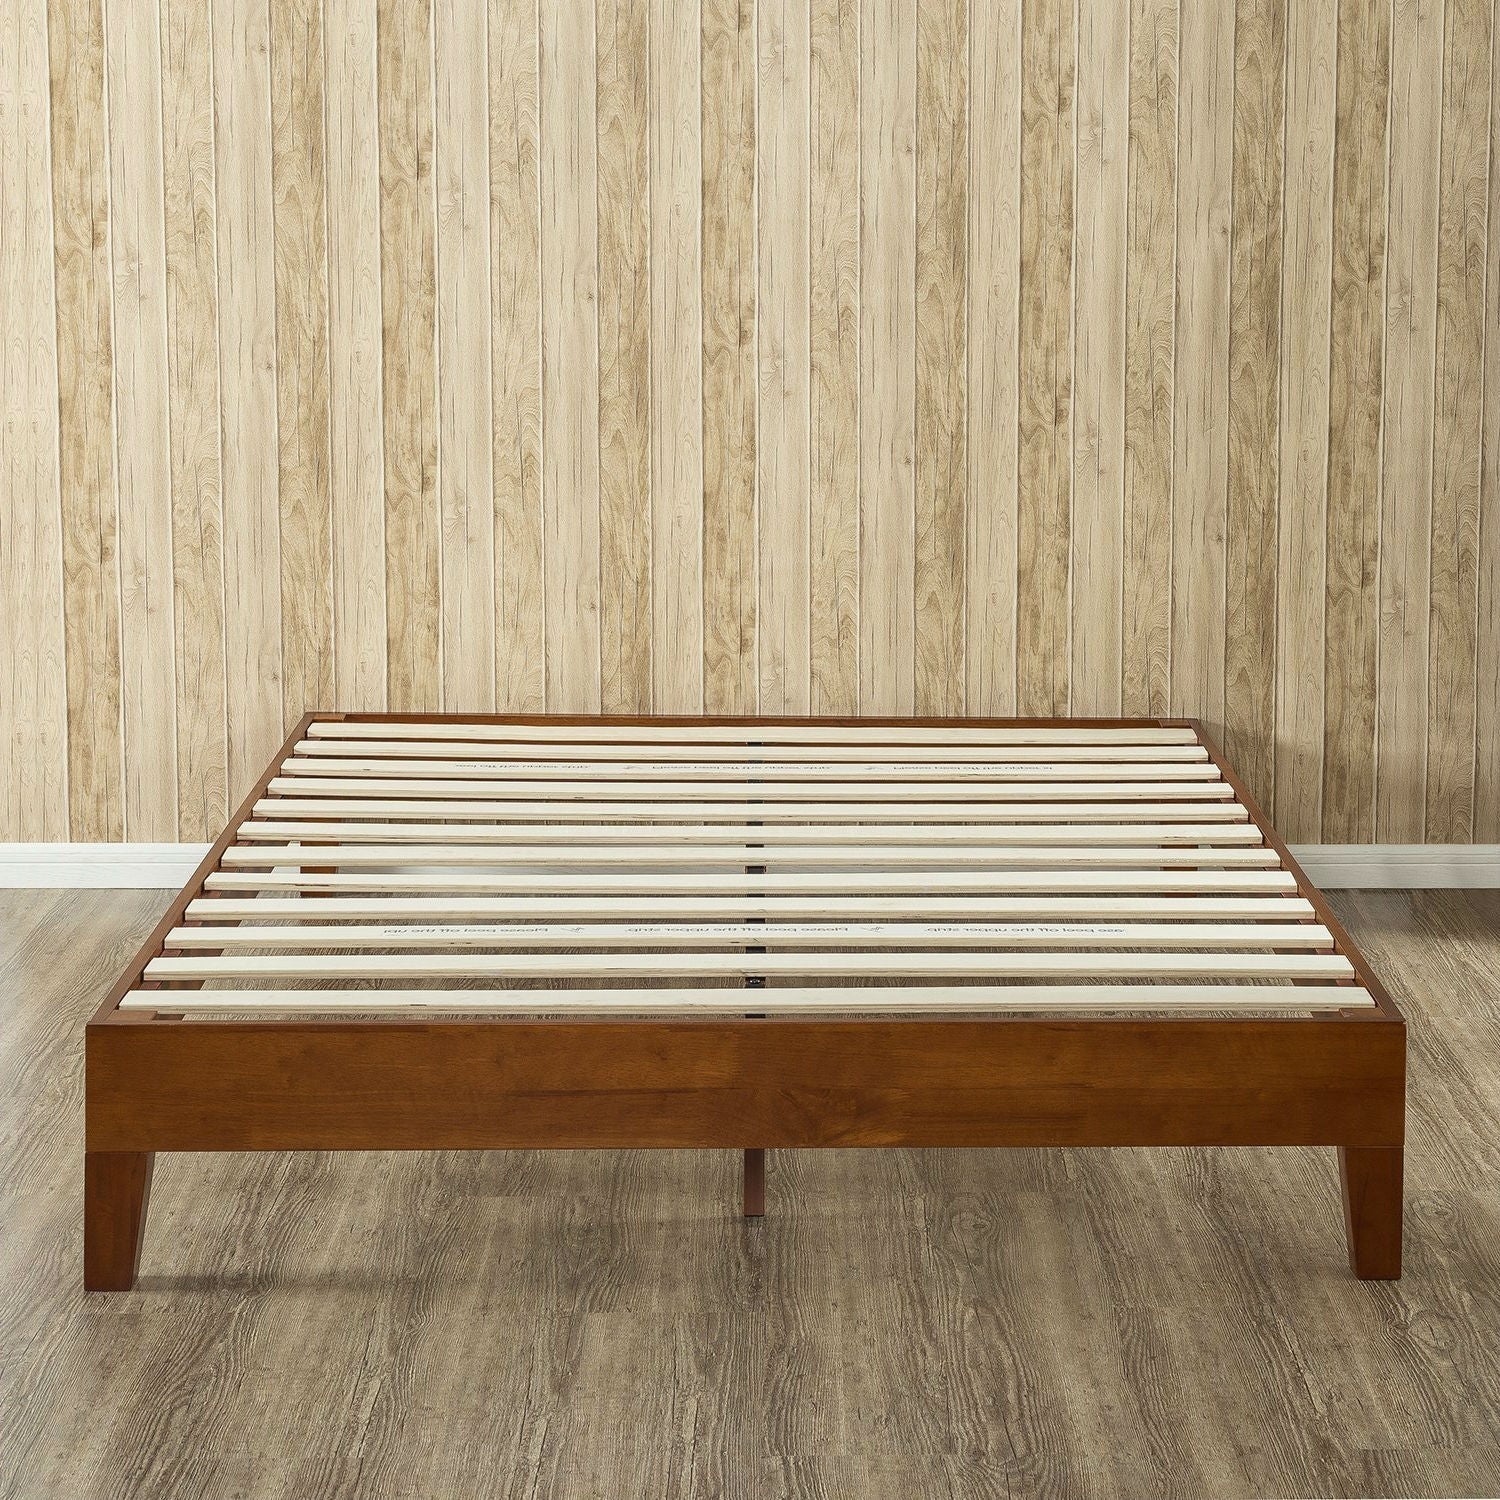 Bedroom > Bed Frames > Platform Beds - Twin Size Low Profile Wooden Platform Bed Frame In Cherry Finish